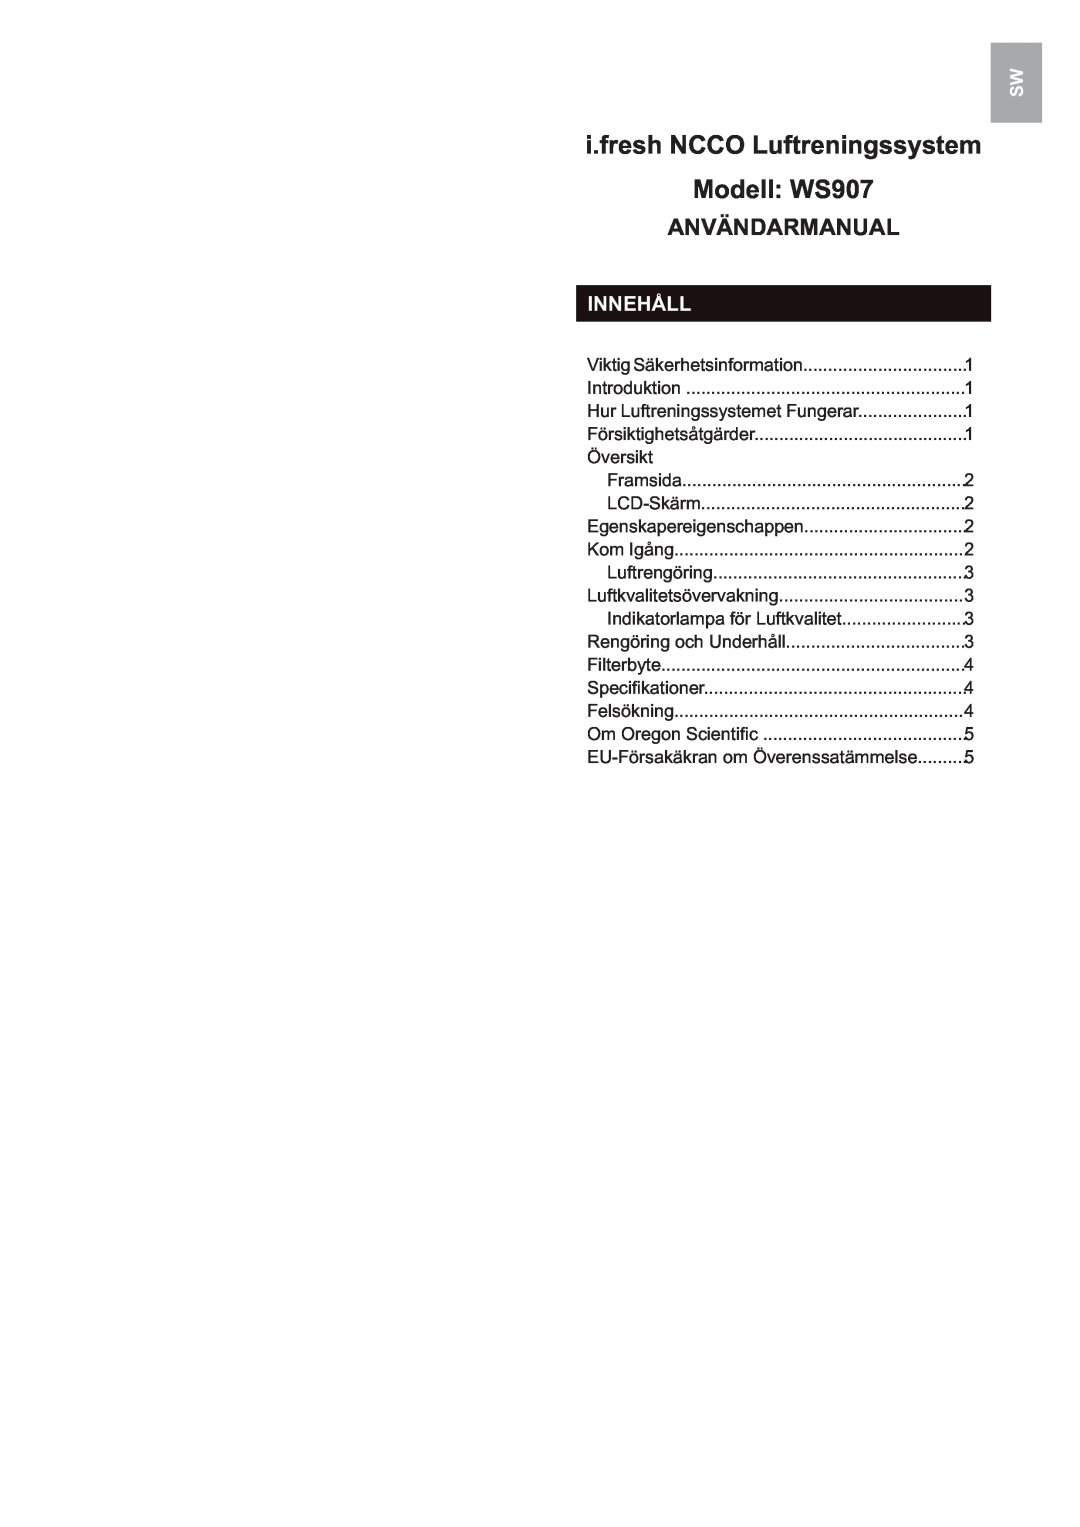 Oregon Scientific user manual i.fresh NCCO Luftreningssystem, Användarmanual, Innehåll, Modell WS907 